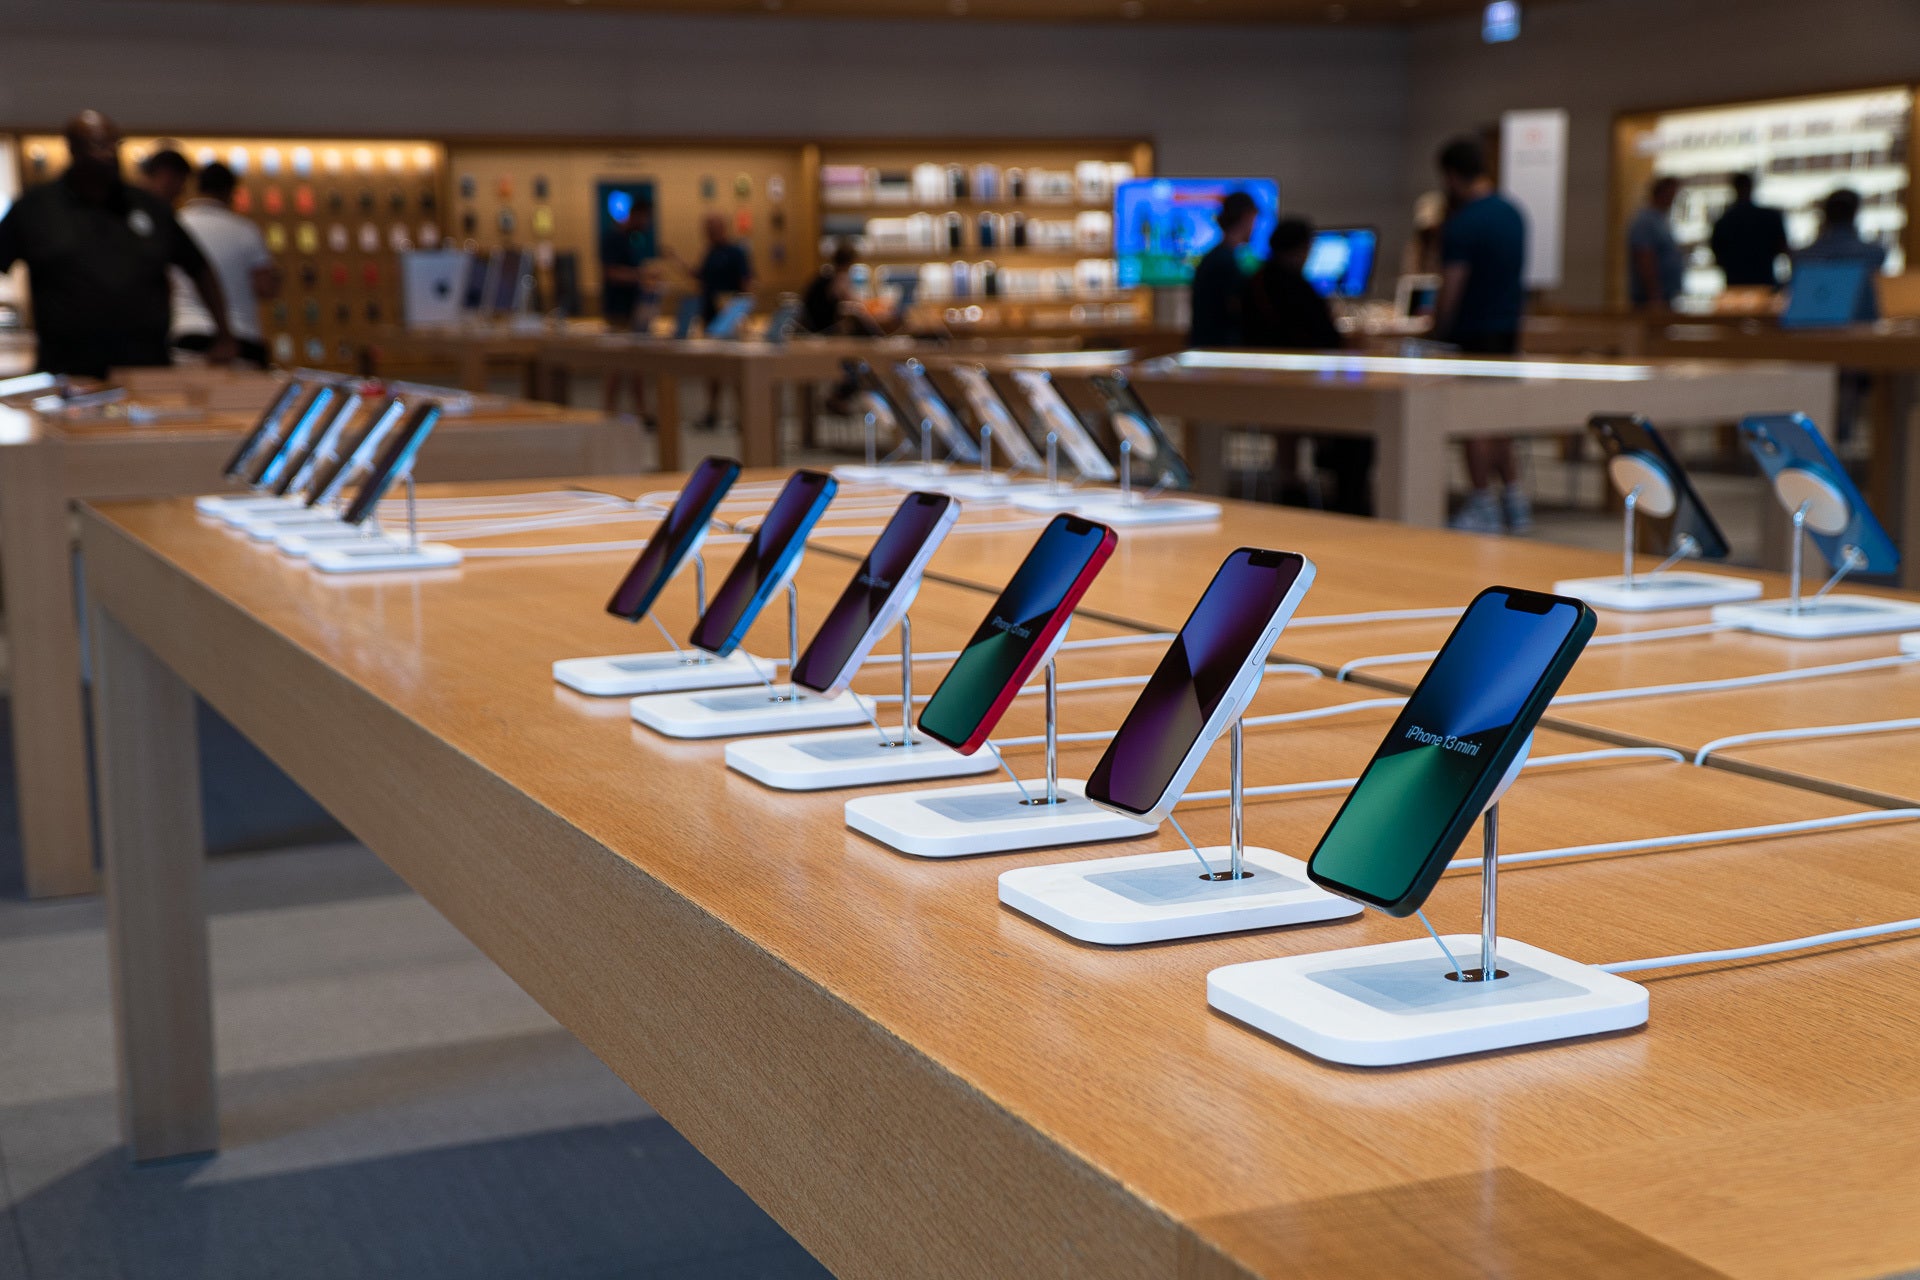 In einem der Apple Stores können Sie alle verfügbaren iPhone-Modelle aus erster Hand ausprobieren (Bildnachweis: PhoneArena) - Vertreter von T-Mobile sagen "kein Handy"? Dann gib ihnen ein High Five und kauf es woanders